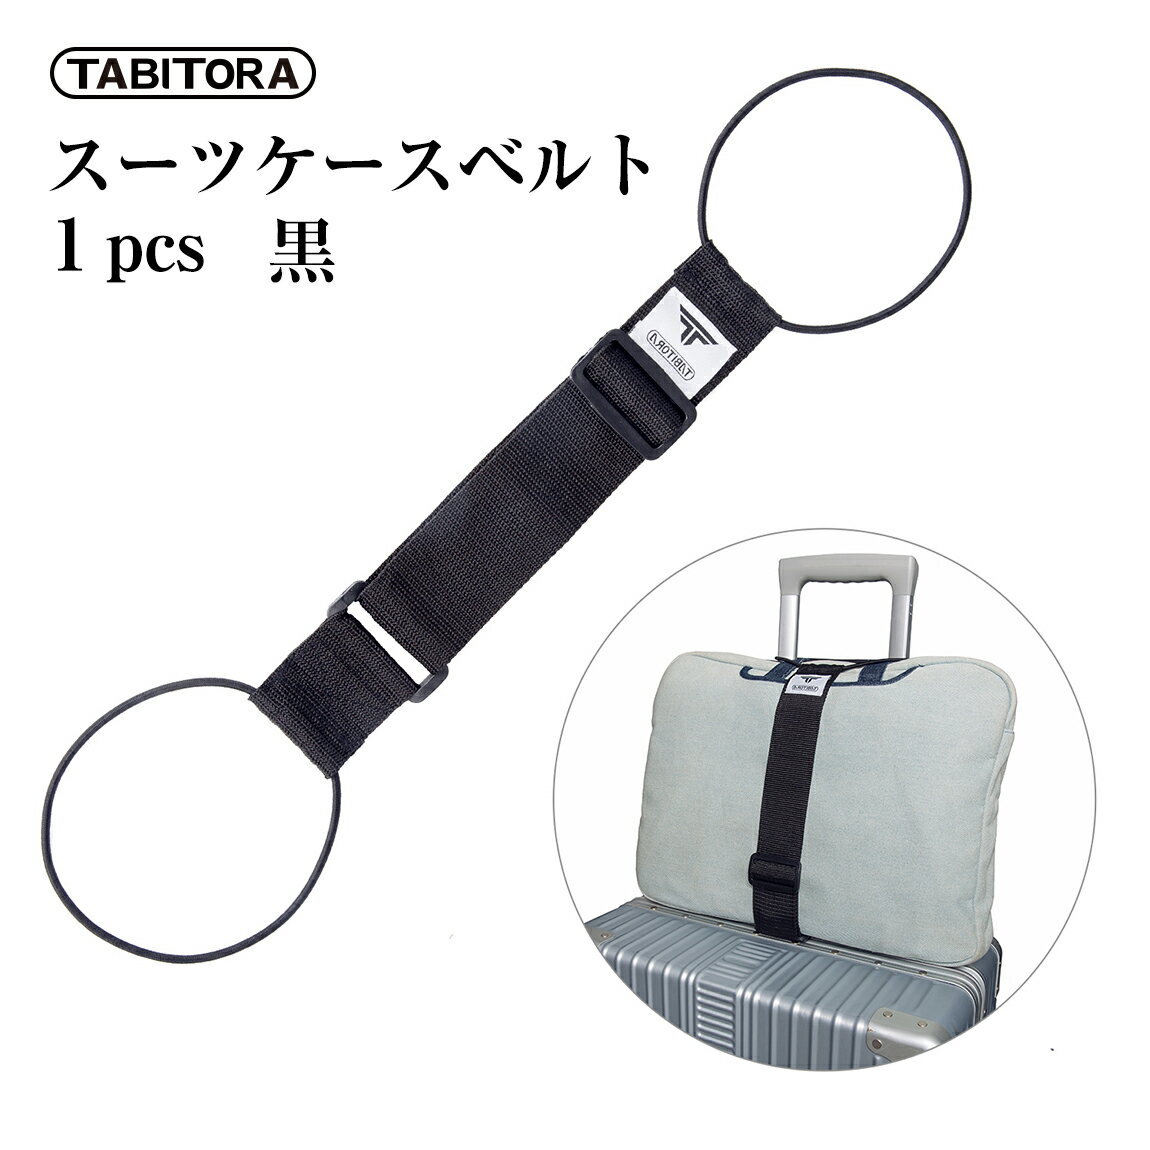 TABITORA(タビトラ) バッグとめるベルト 旅行用品/スーツケースベルト ブラック 57~75cm(調節可)×幅5cm 1PCS